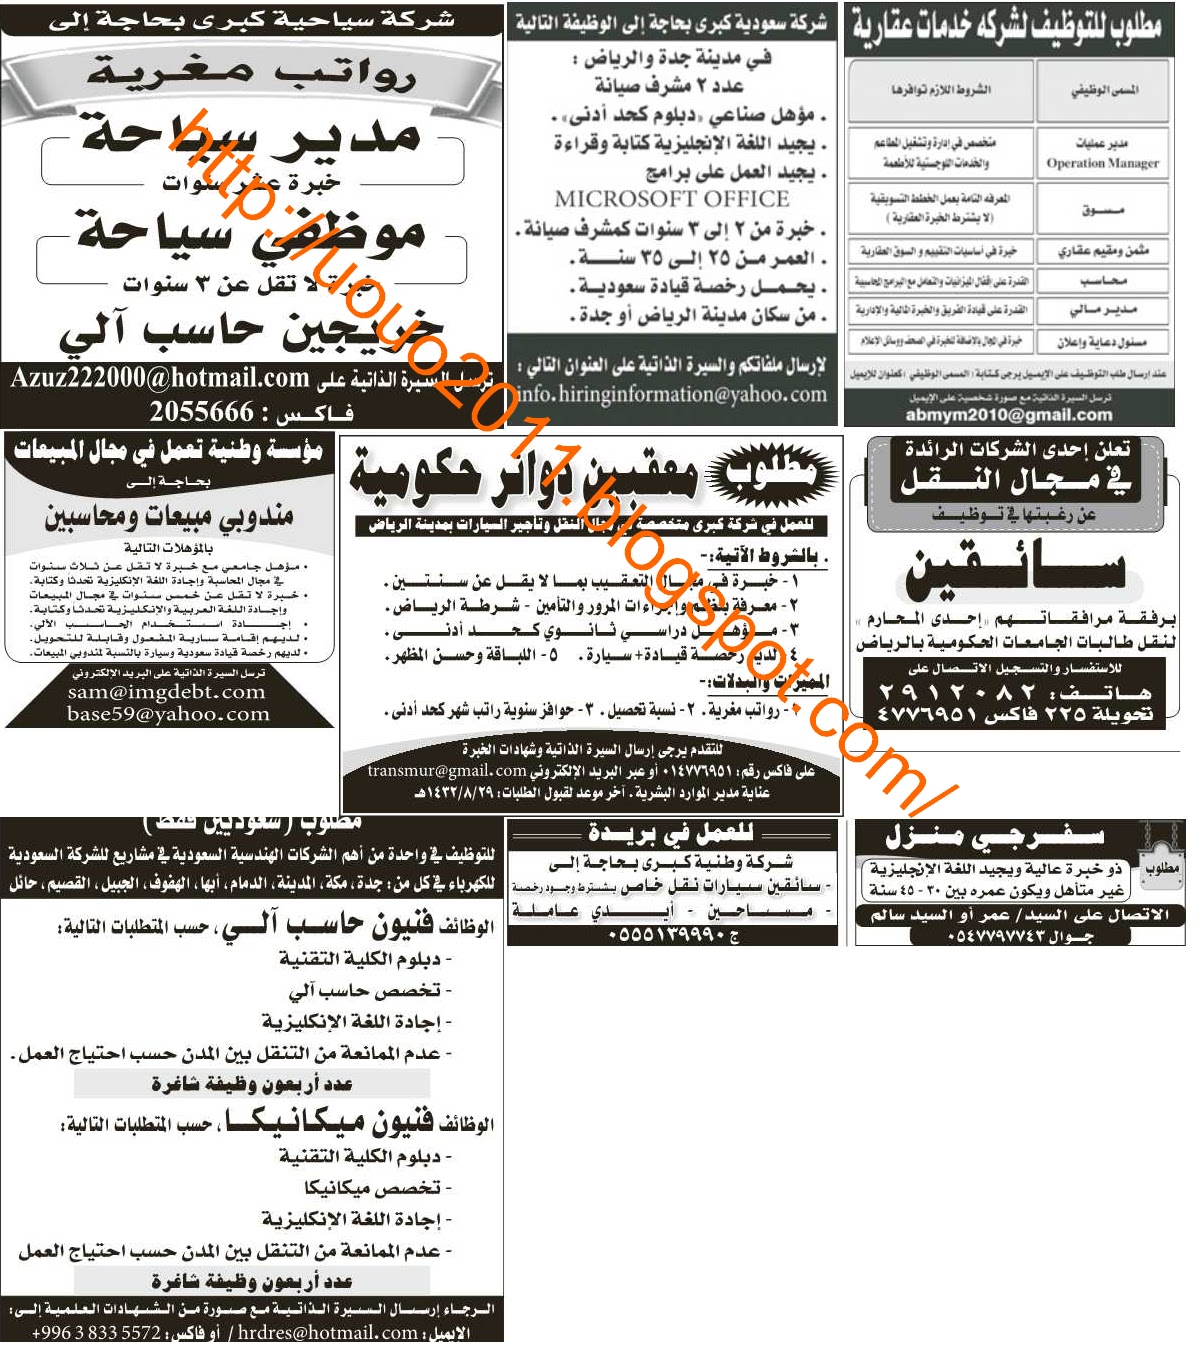 وظائف السعودية - وظائف جريدة الرياض الاربعاء 27 ابريل 2011 Untitled